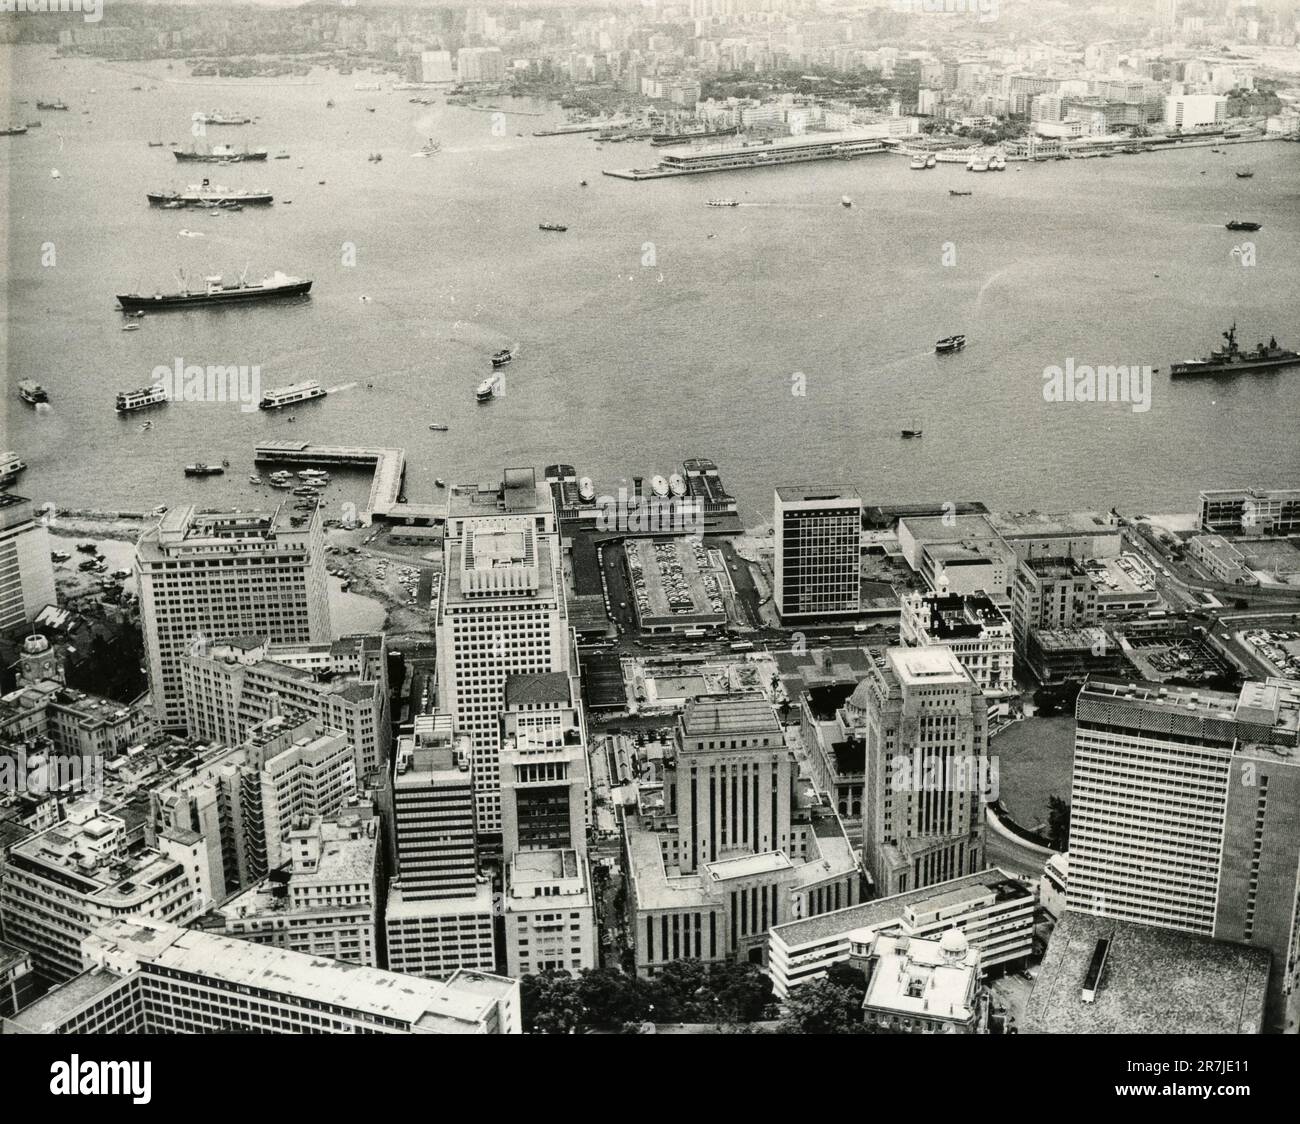 Aerial view of the bay of Hong Kong, China, 1950s Stock Photo